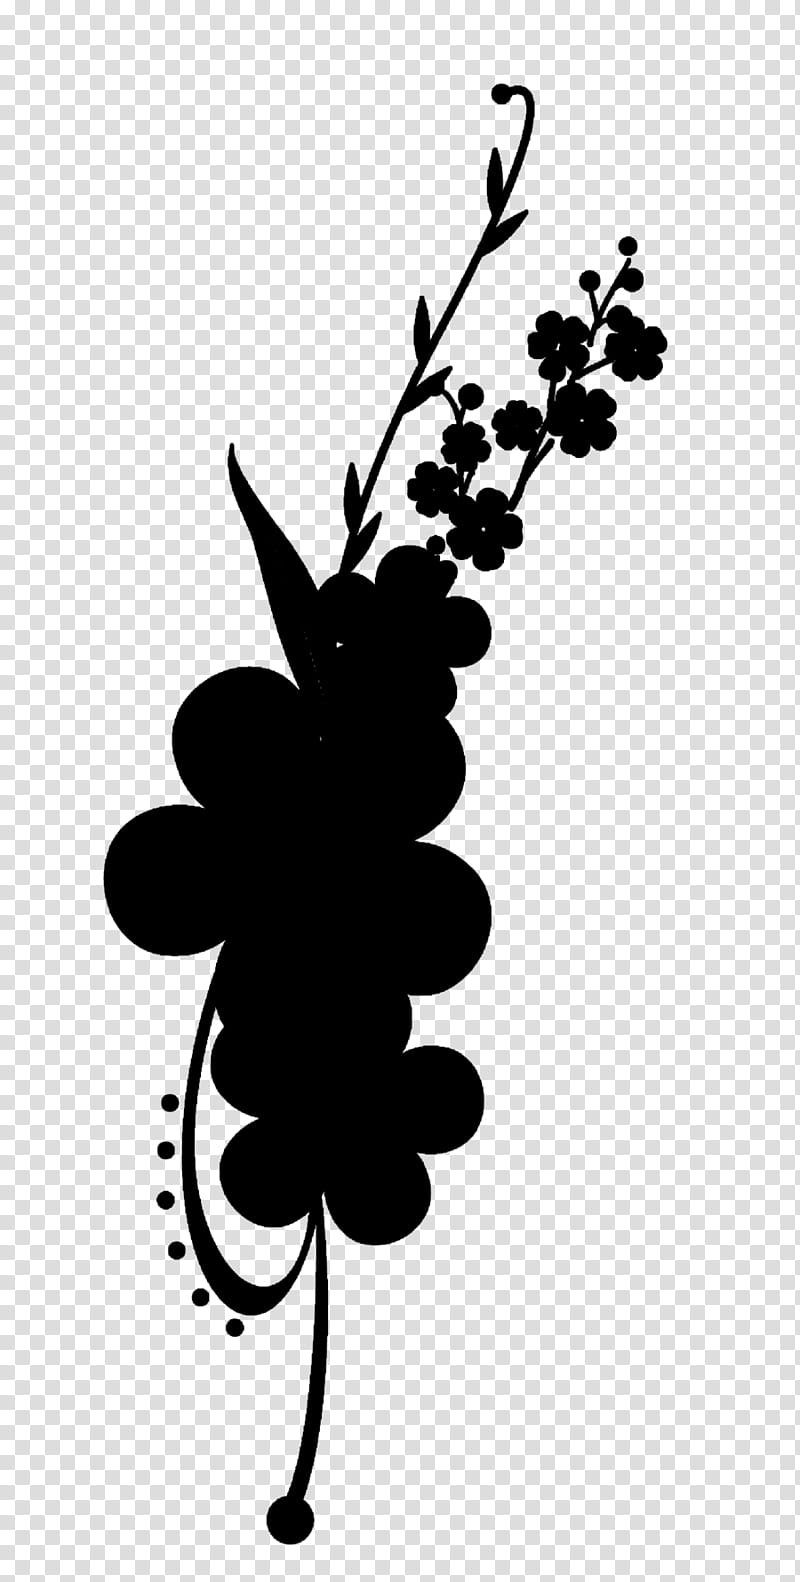 Black And White Flower, Poetry, Urdu, Urdu Poetry, Black White M, Baarish, Heart, Plants transparent background PNG clipart